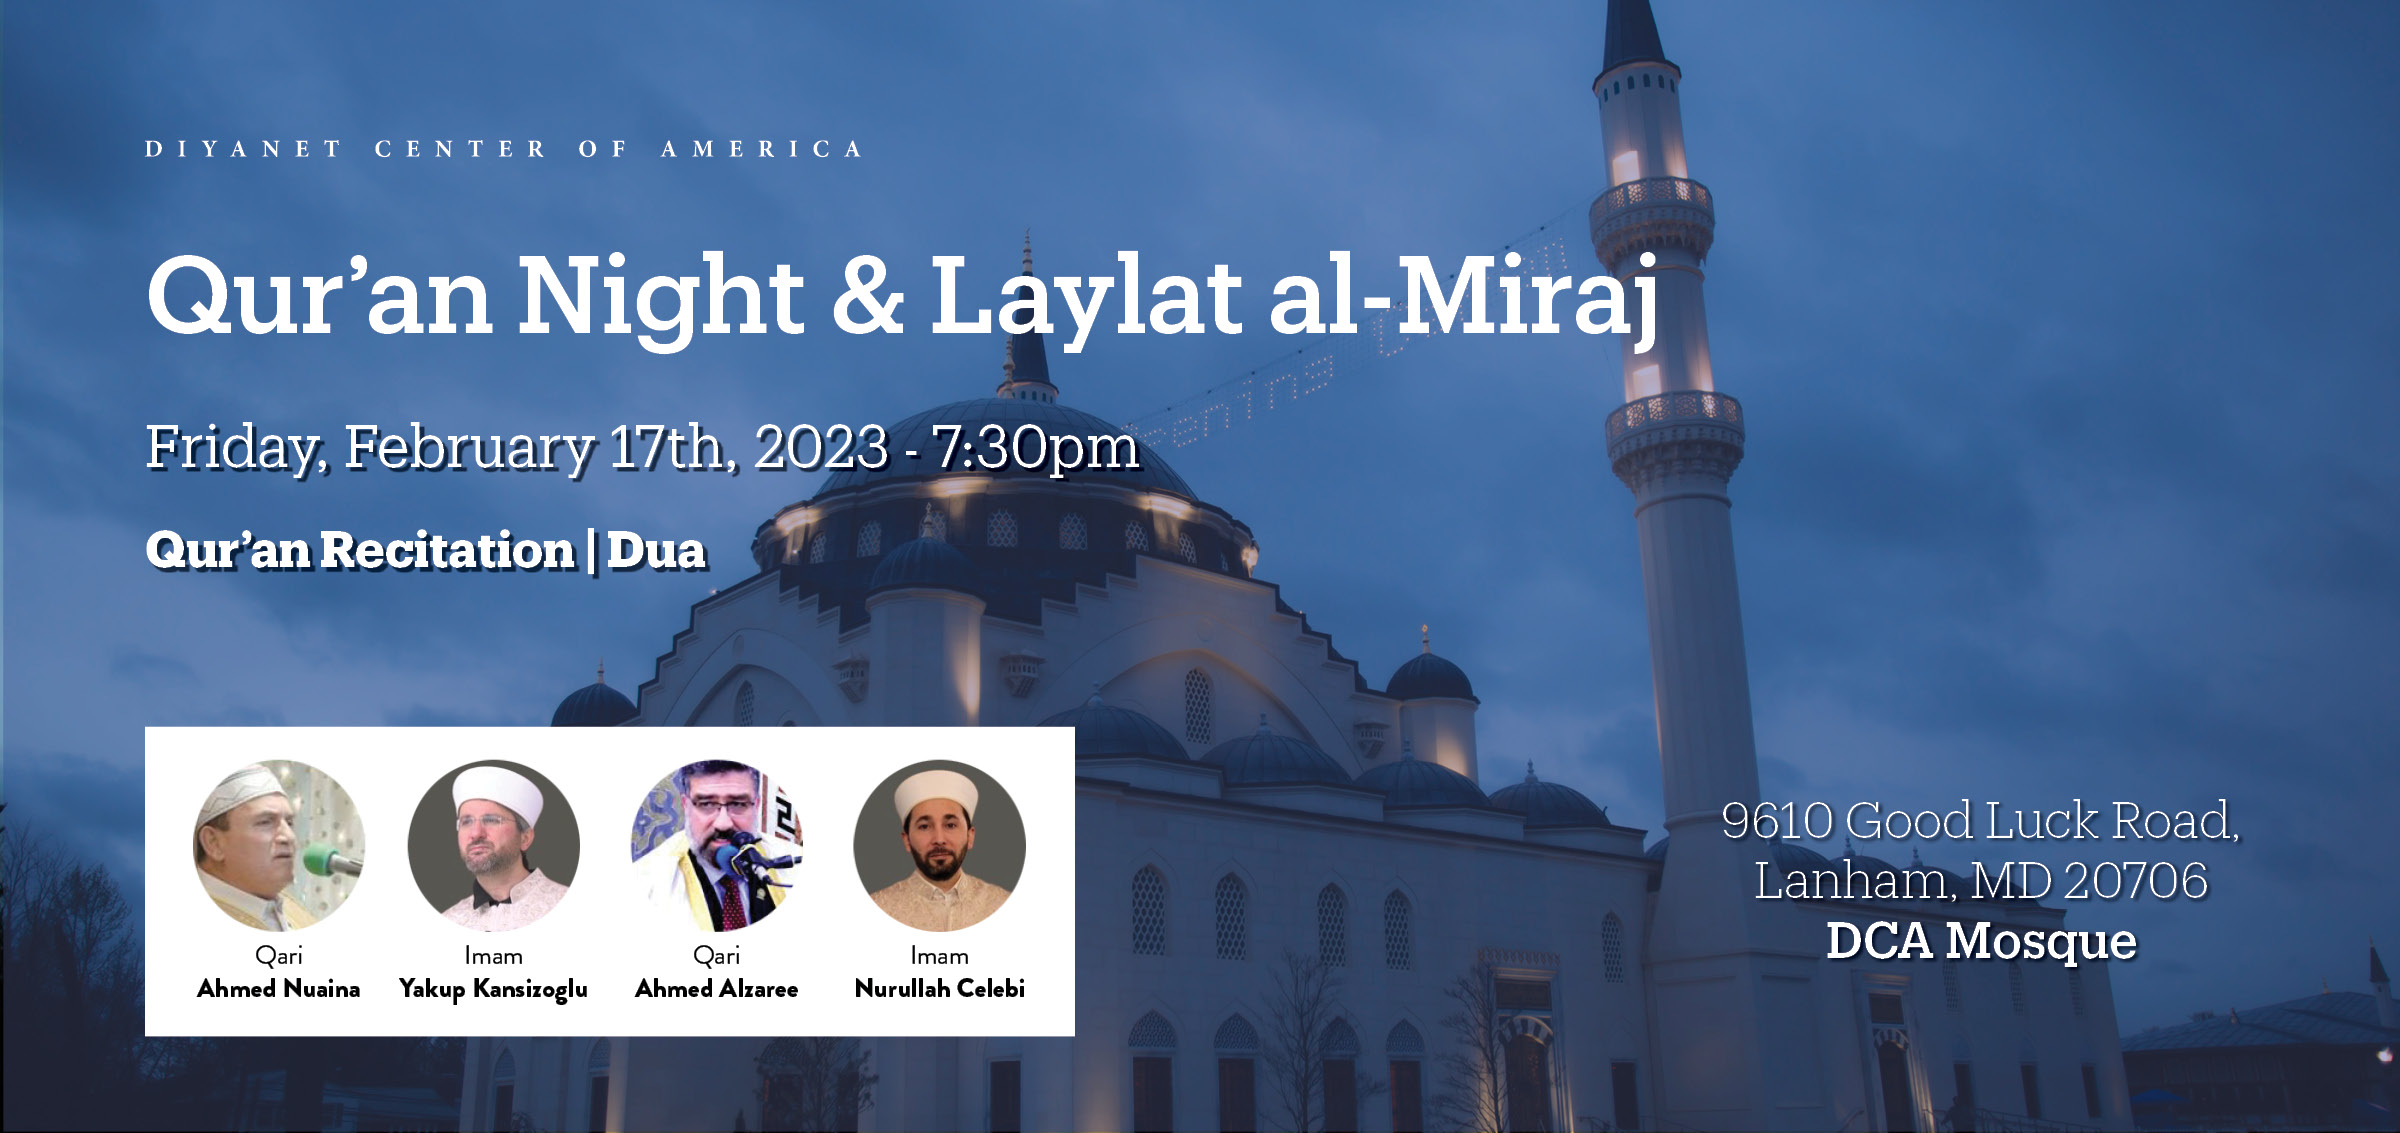 Qur'an Night & Laylat al-Miraj 2023